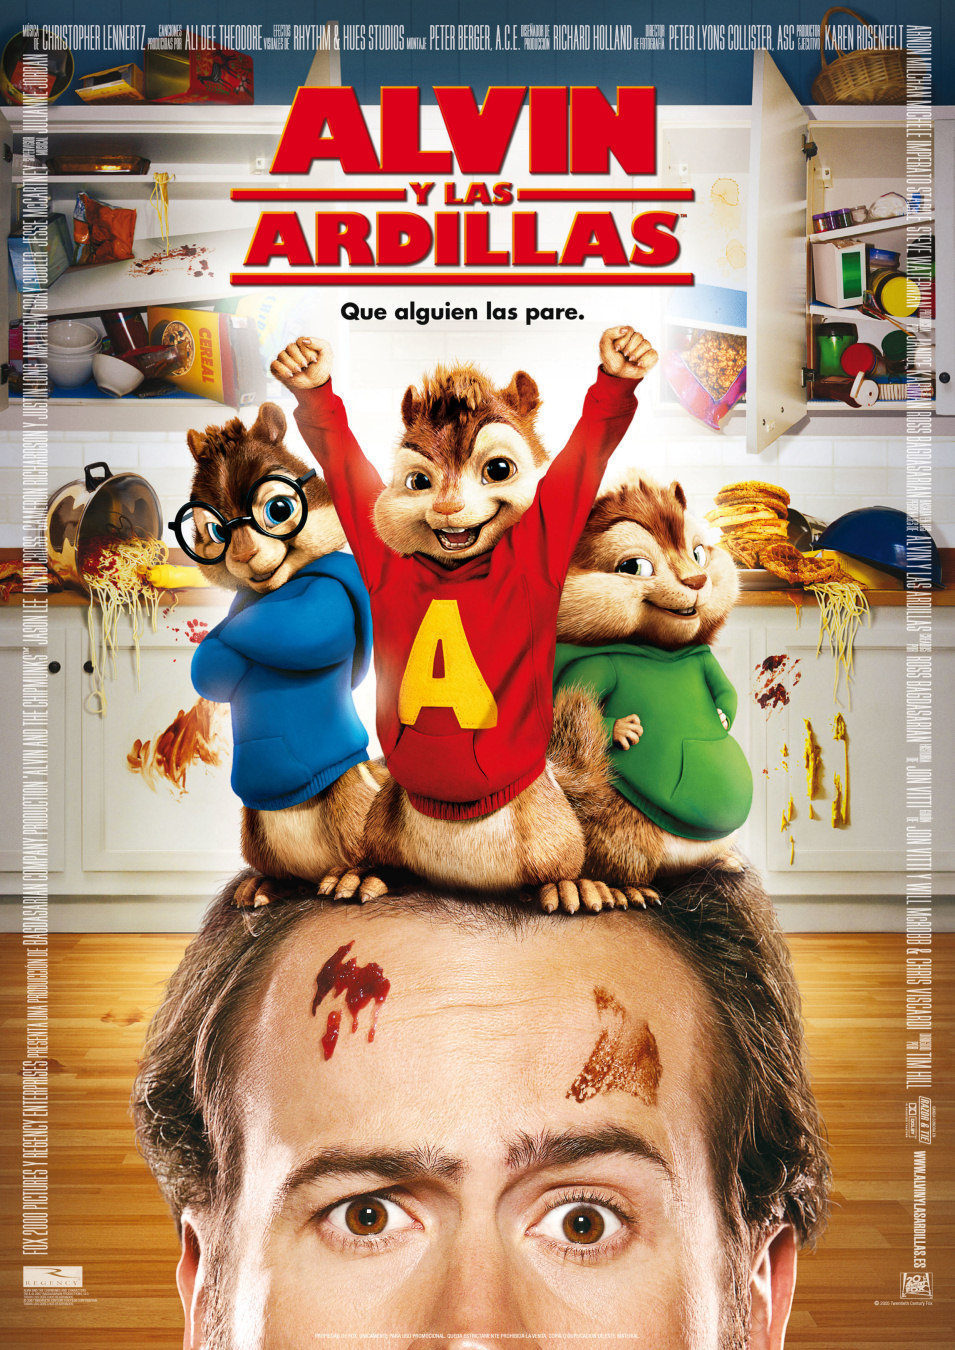 Cartel de Alvin y las ardillas - España